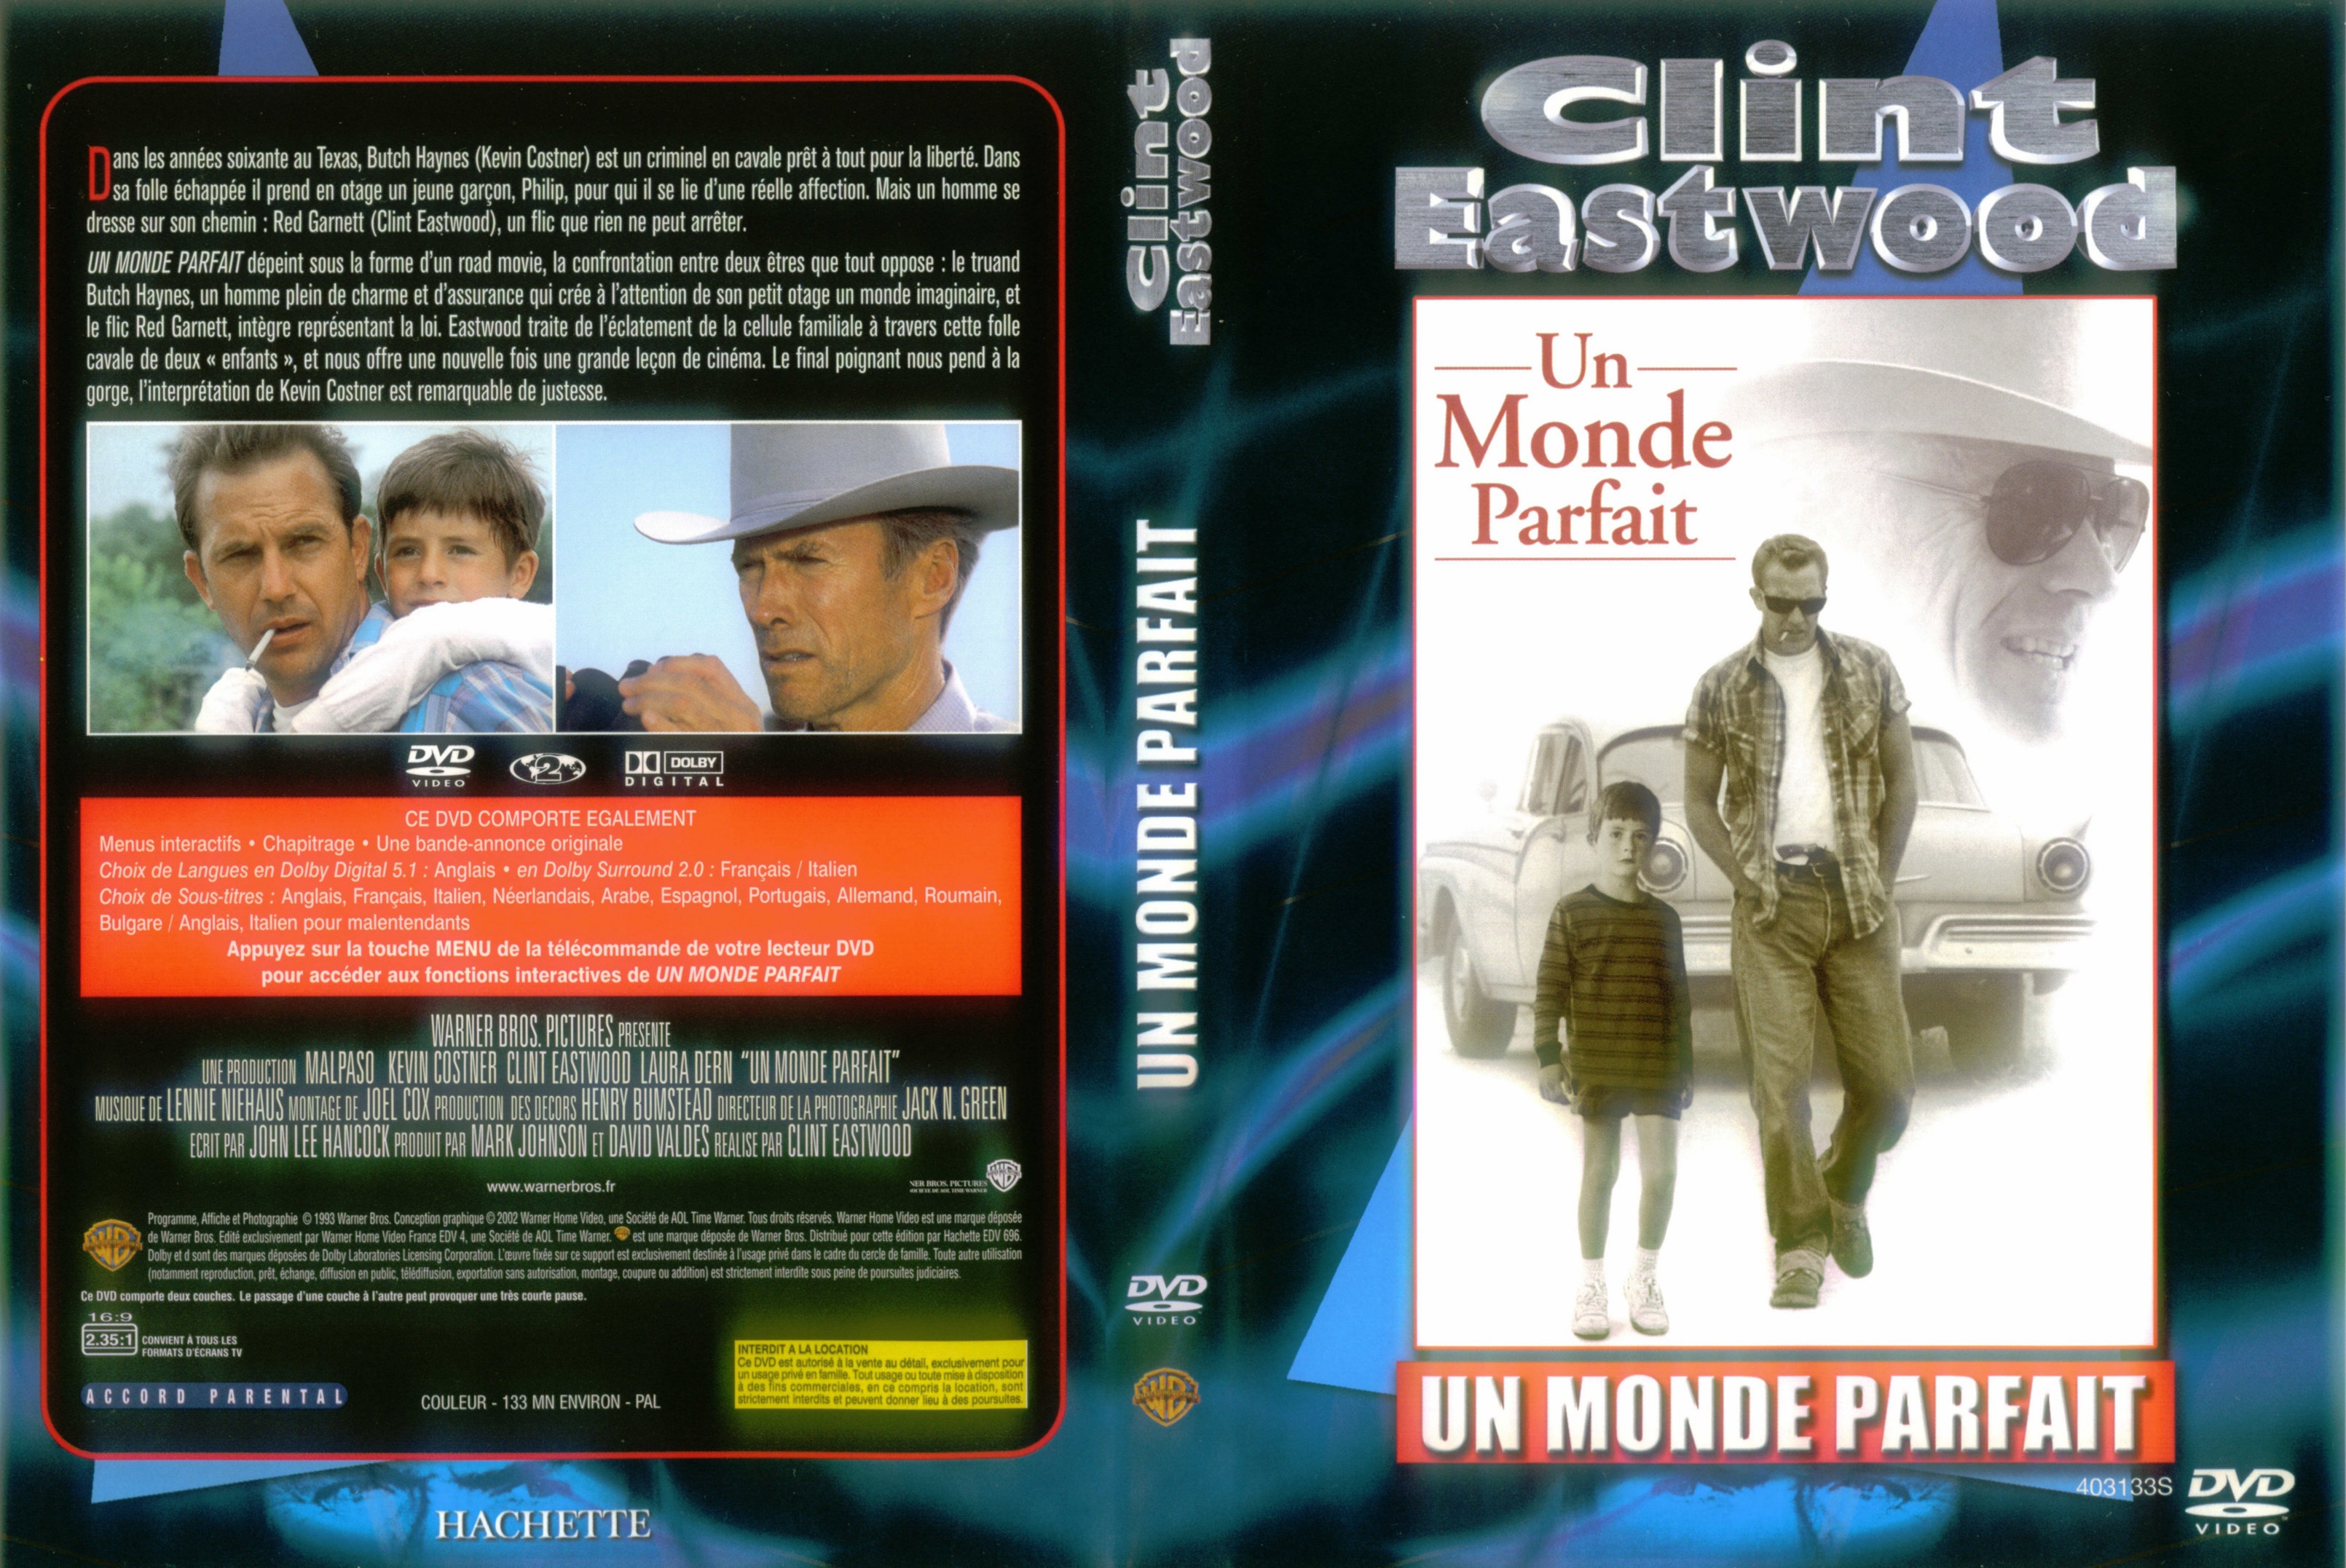 Jaquette DVD Un monde parfait v2